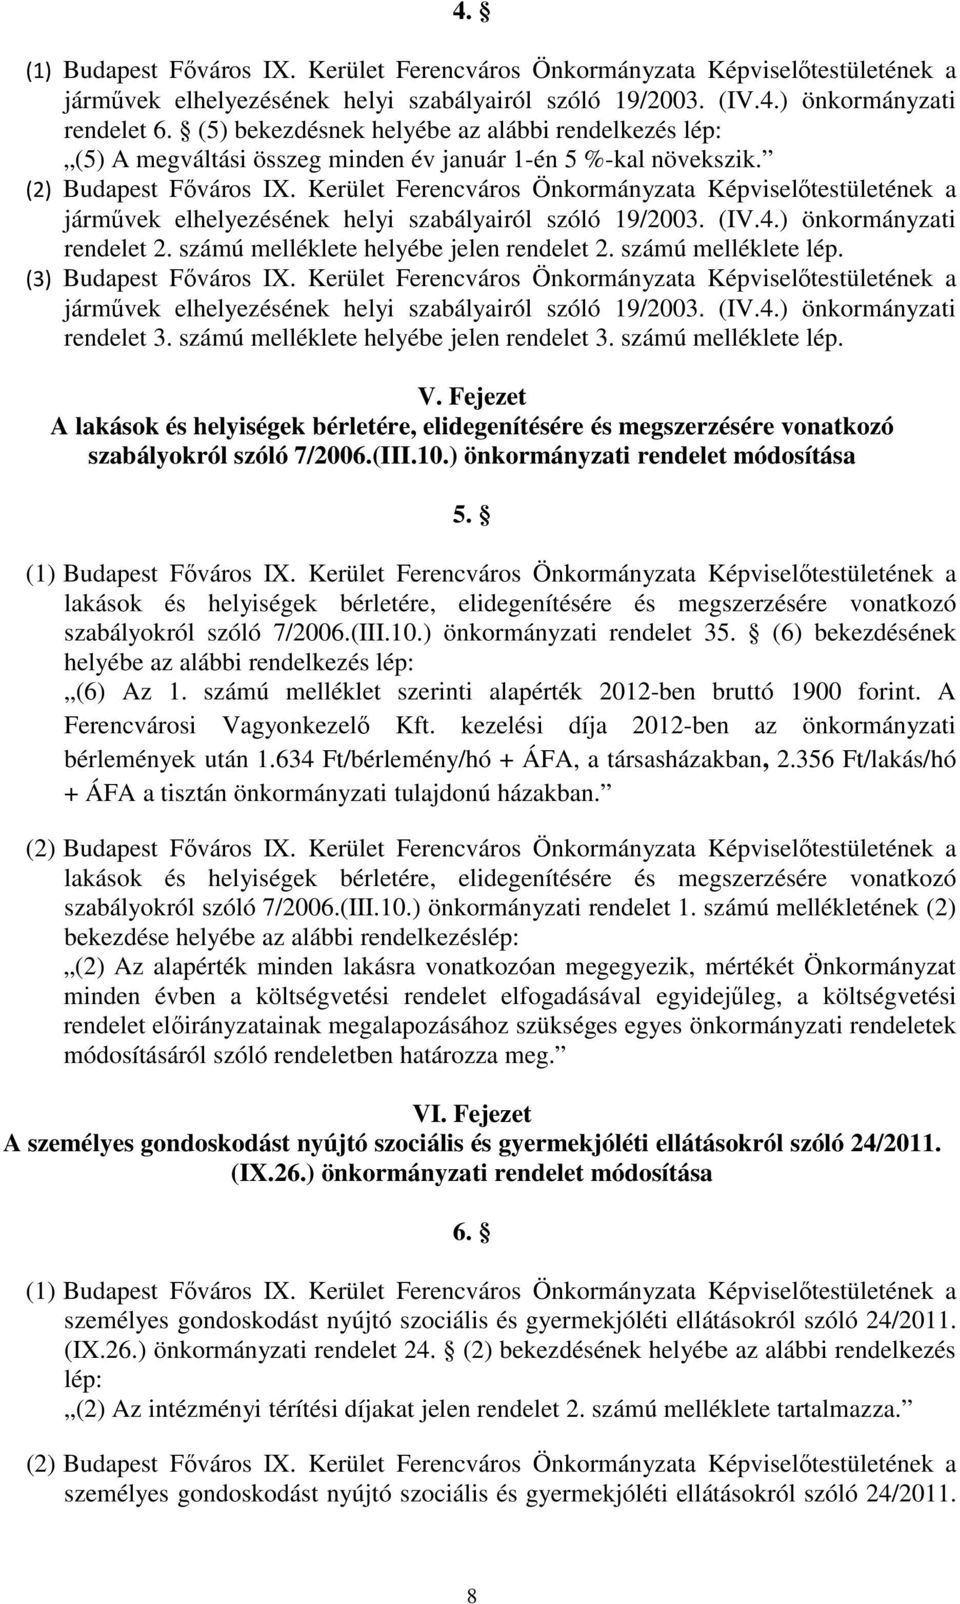 Kerület Ferencváros Önkormányzata Képviselőtestületének a járművek elhelyezésének helyi szabályairól szóló 19/2003. (IV.4.) önkormányzati rendelet 2. számú melléklete helyébe jelen rendelet 2.